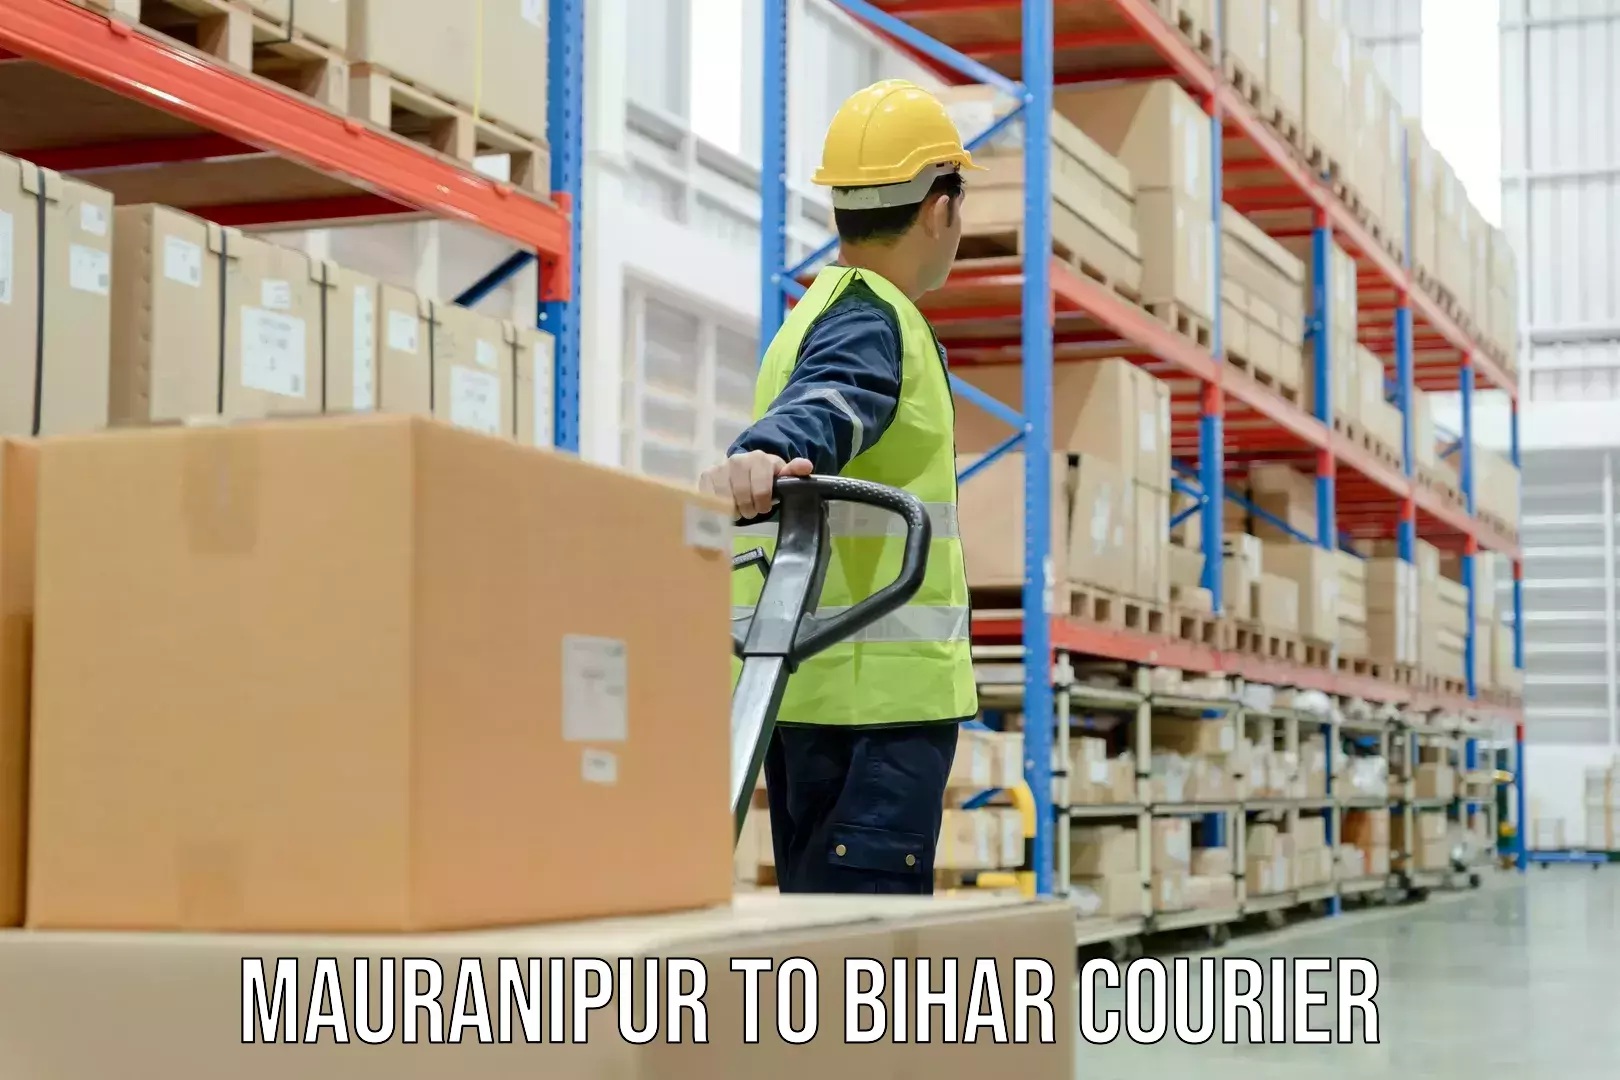 Courier service booking Mauranipur to Thakurganj